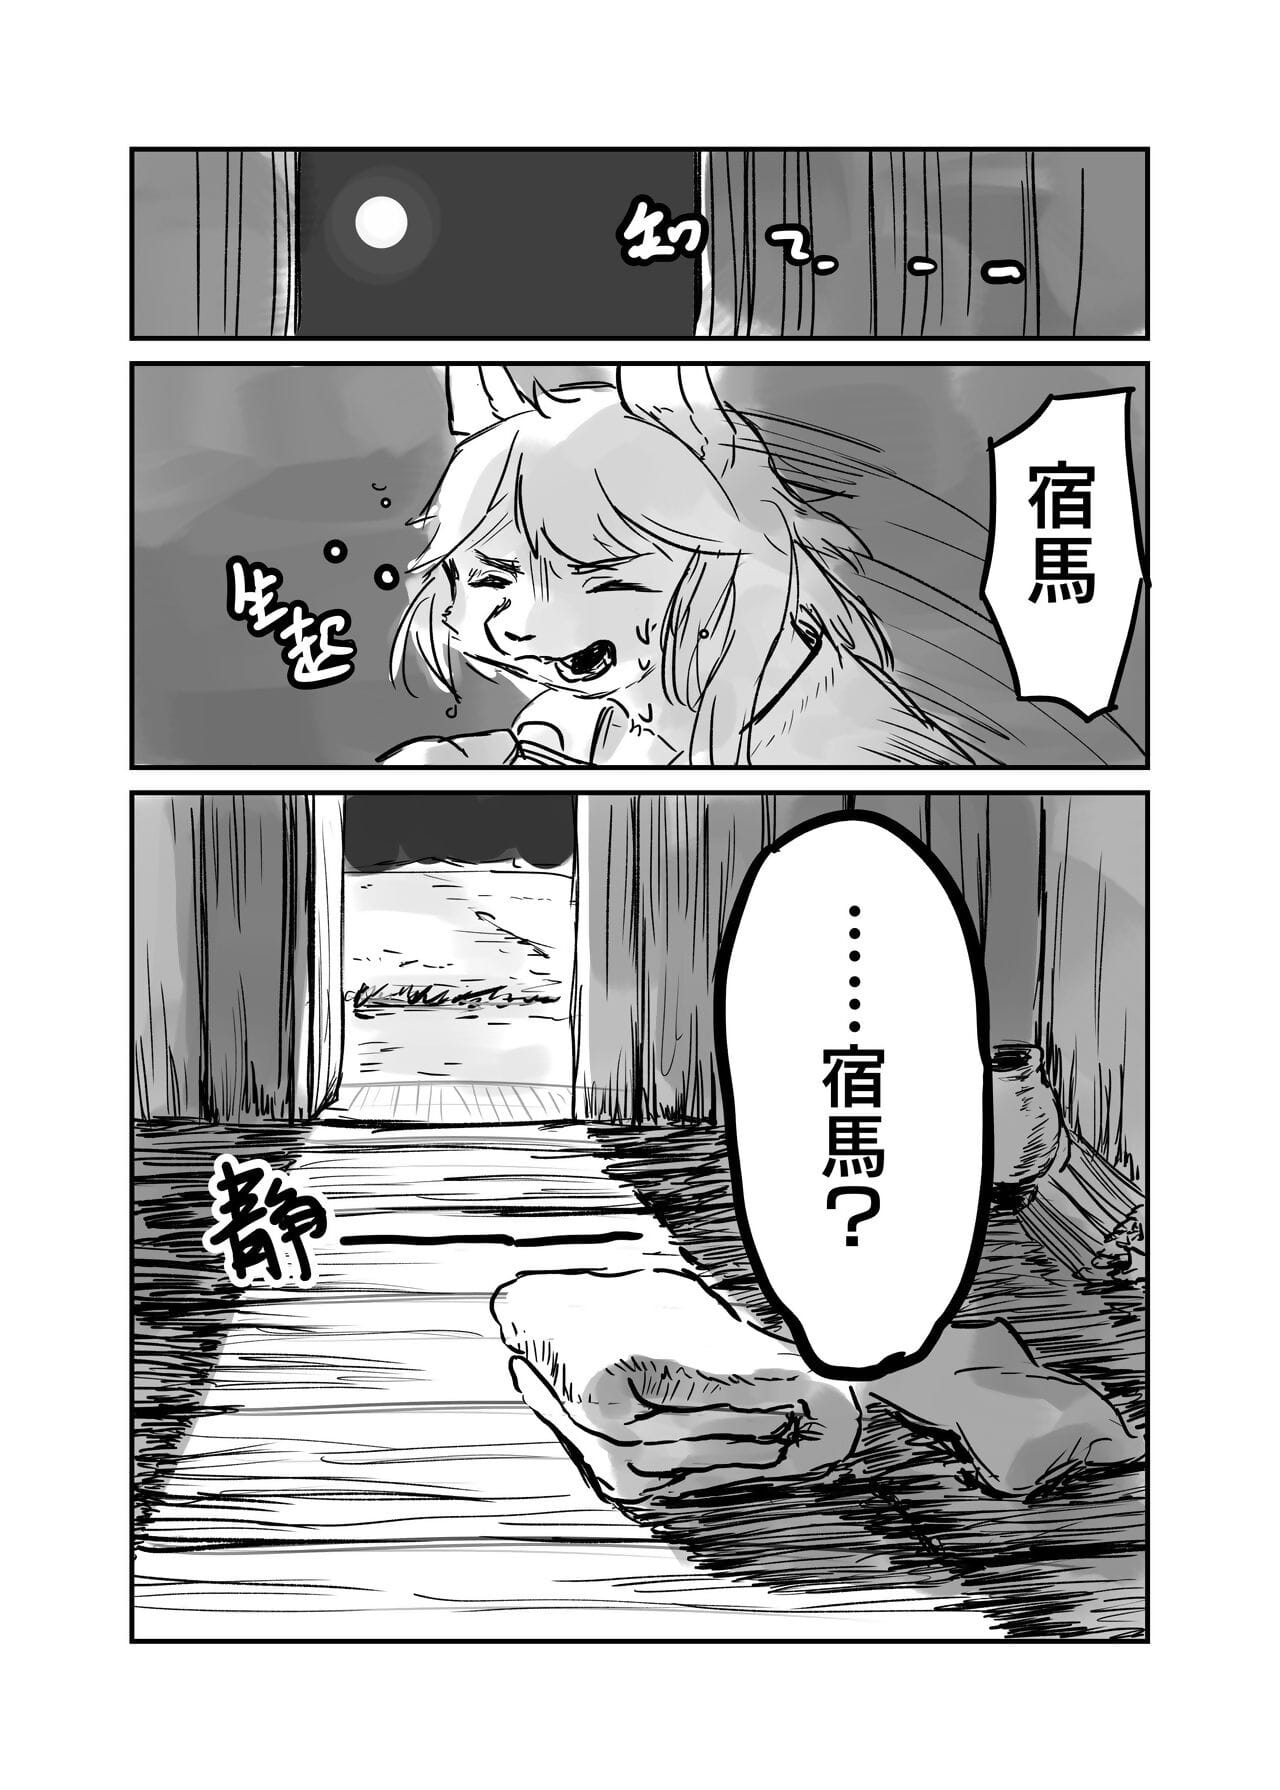 （the bezoeker 他乡之人 by：鬼流 Onderdeel 2 page 1